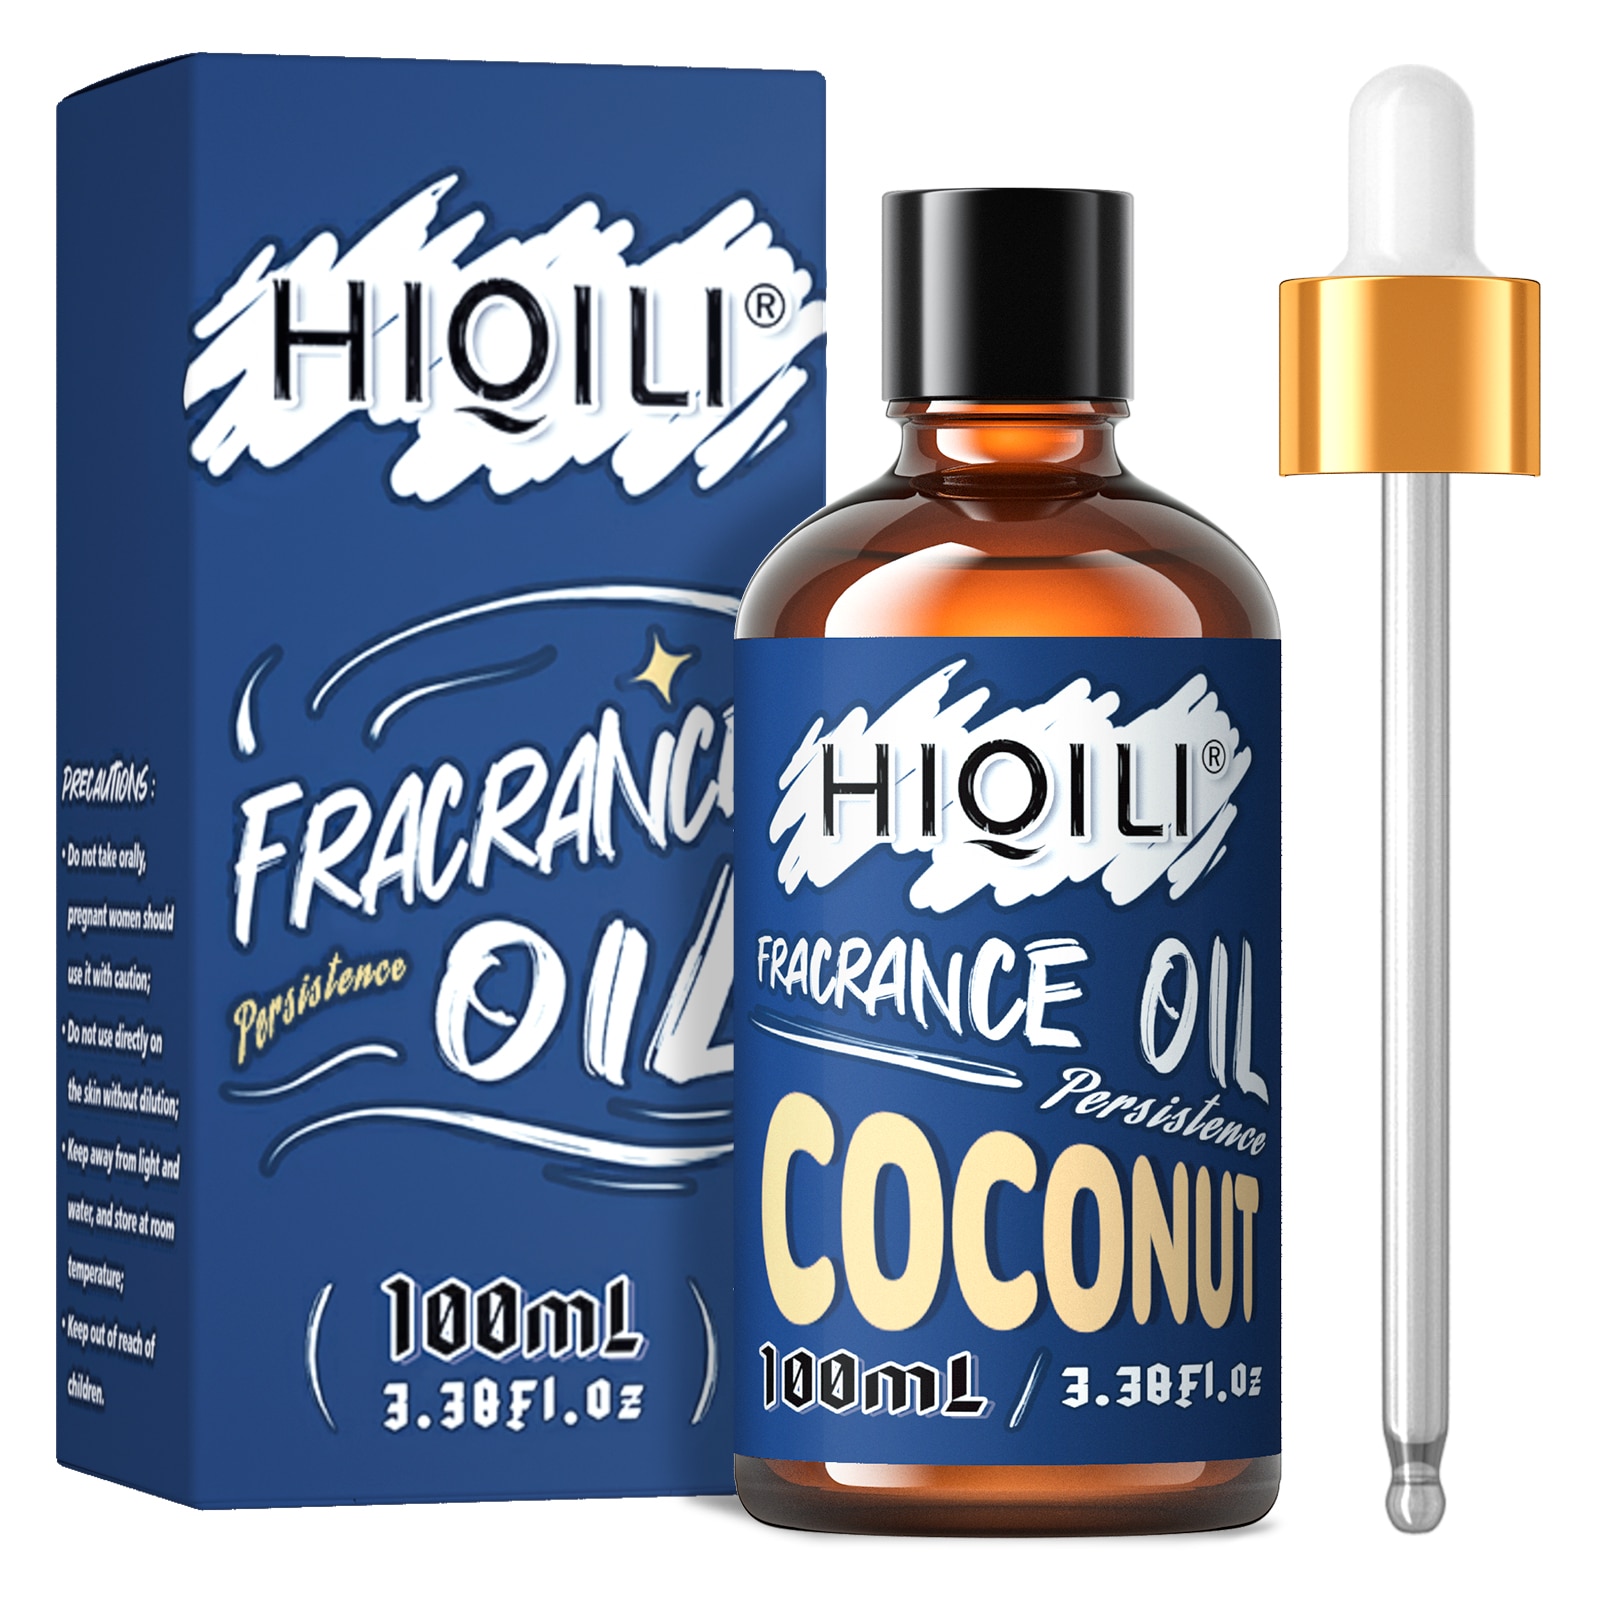 Olejki zapachowe kokosowe, HIQILI 100ML 100% Czysty olejek zapachowy do aromaterapii, dyfuzji samochodowej, nawilżacza powietrza, produkcji świec, majsterkowania